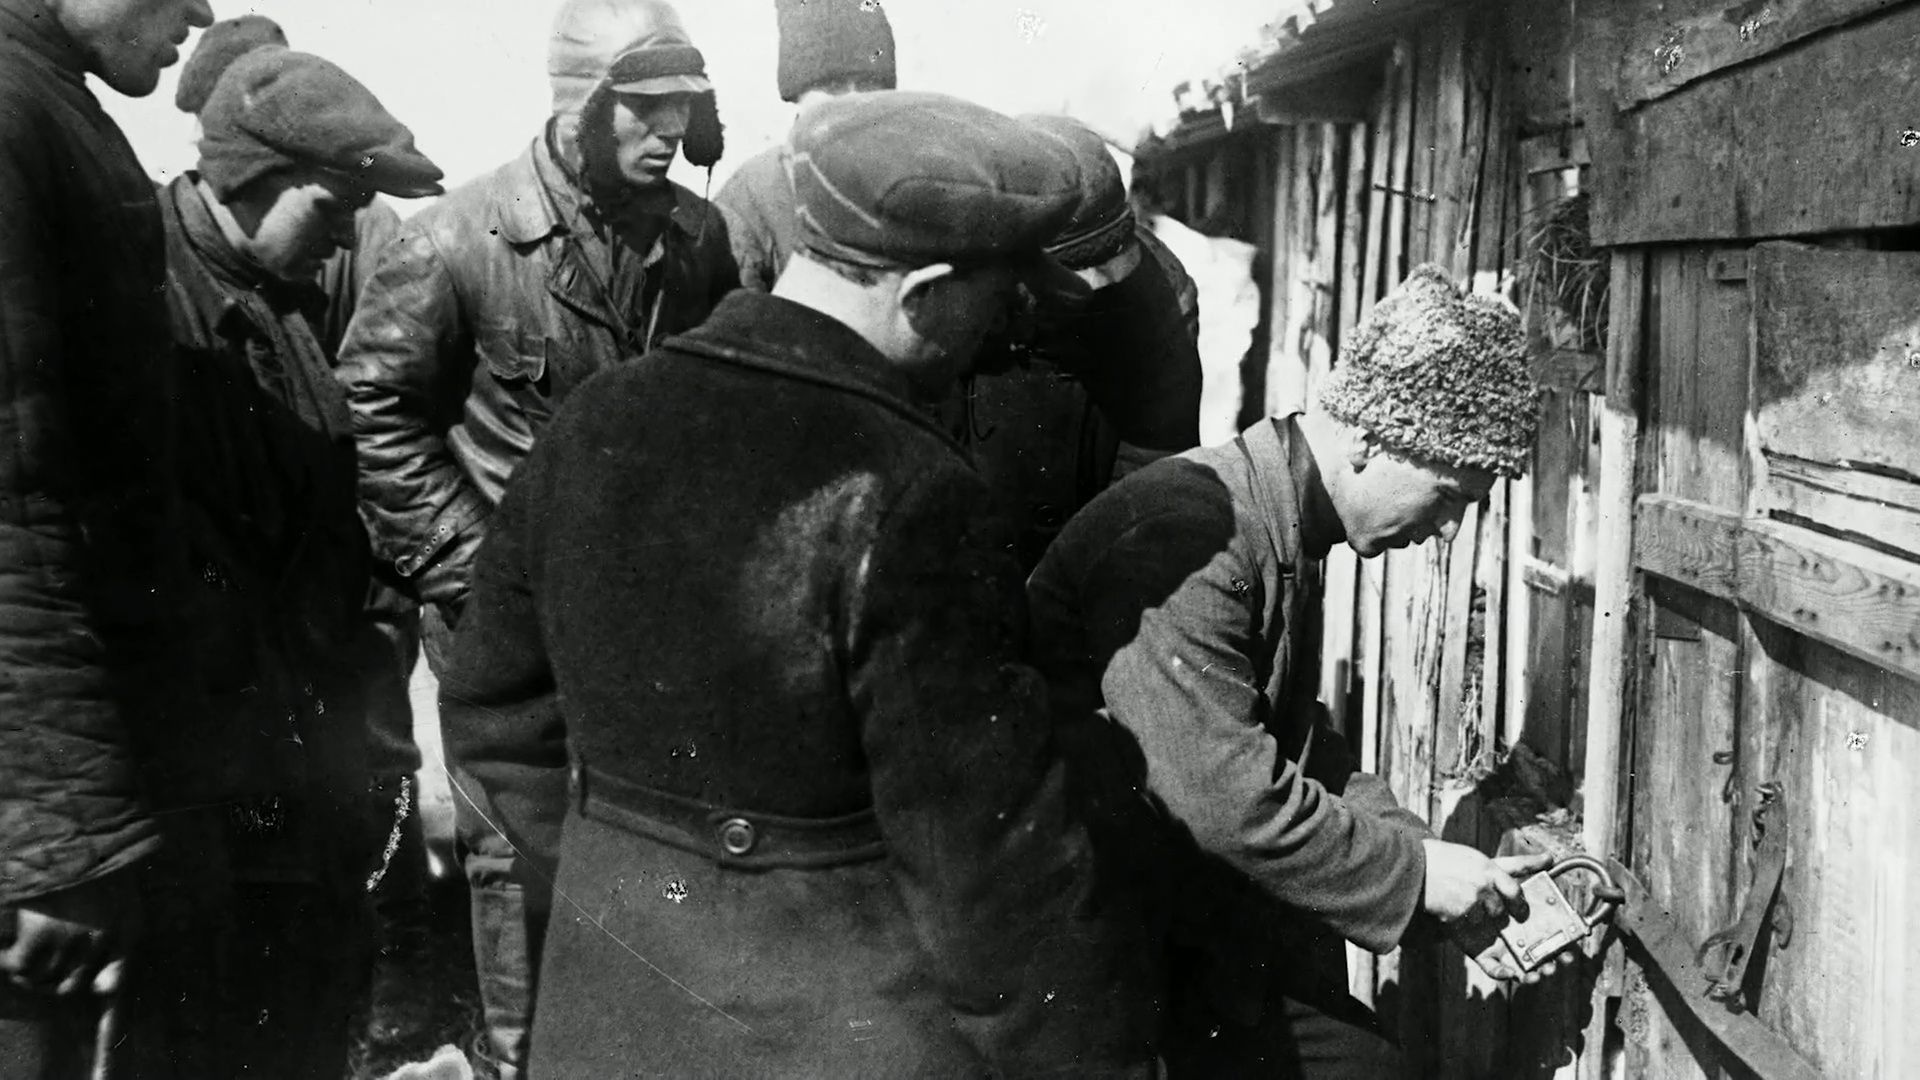 Jednorázové použití / Fotogalerie / Stalinův Holodomor na Ukrajině v 30 letech stál životy 10 miliónů lidí / Youtube